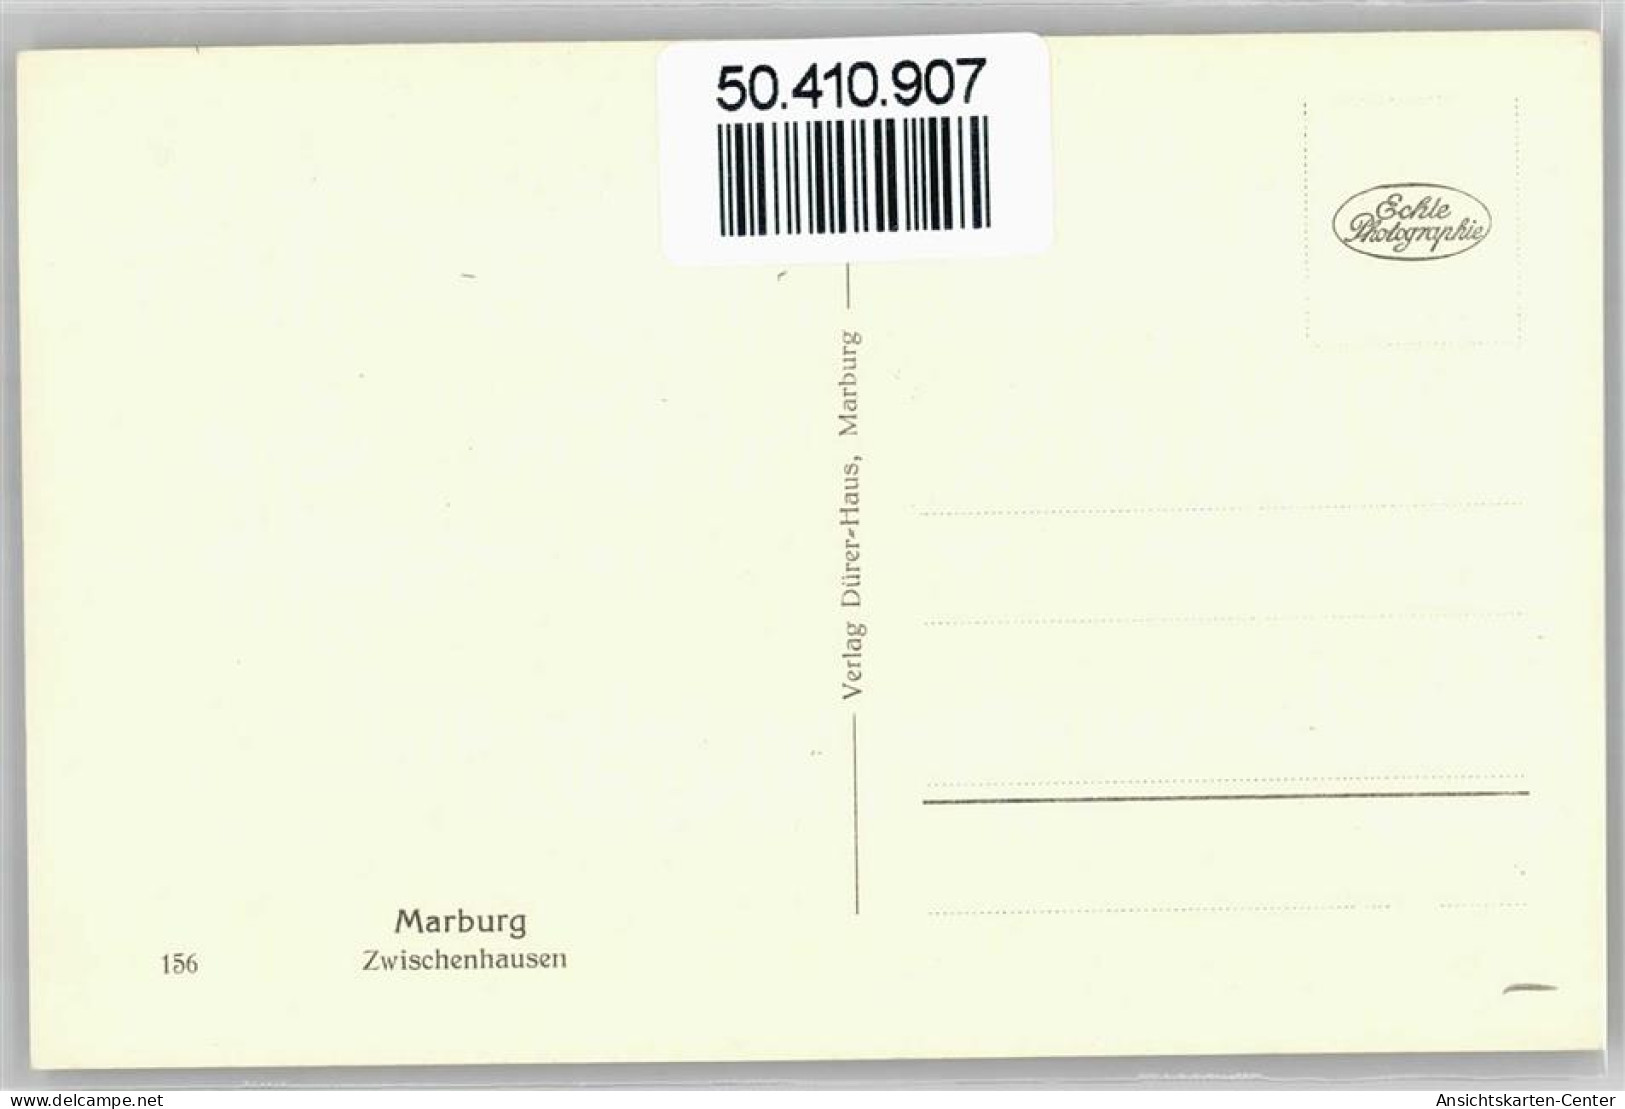 50410907 - Marburg - Marburg